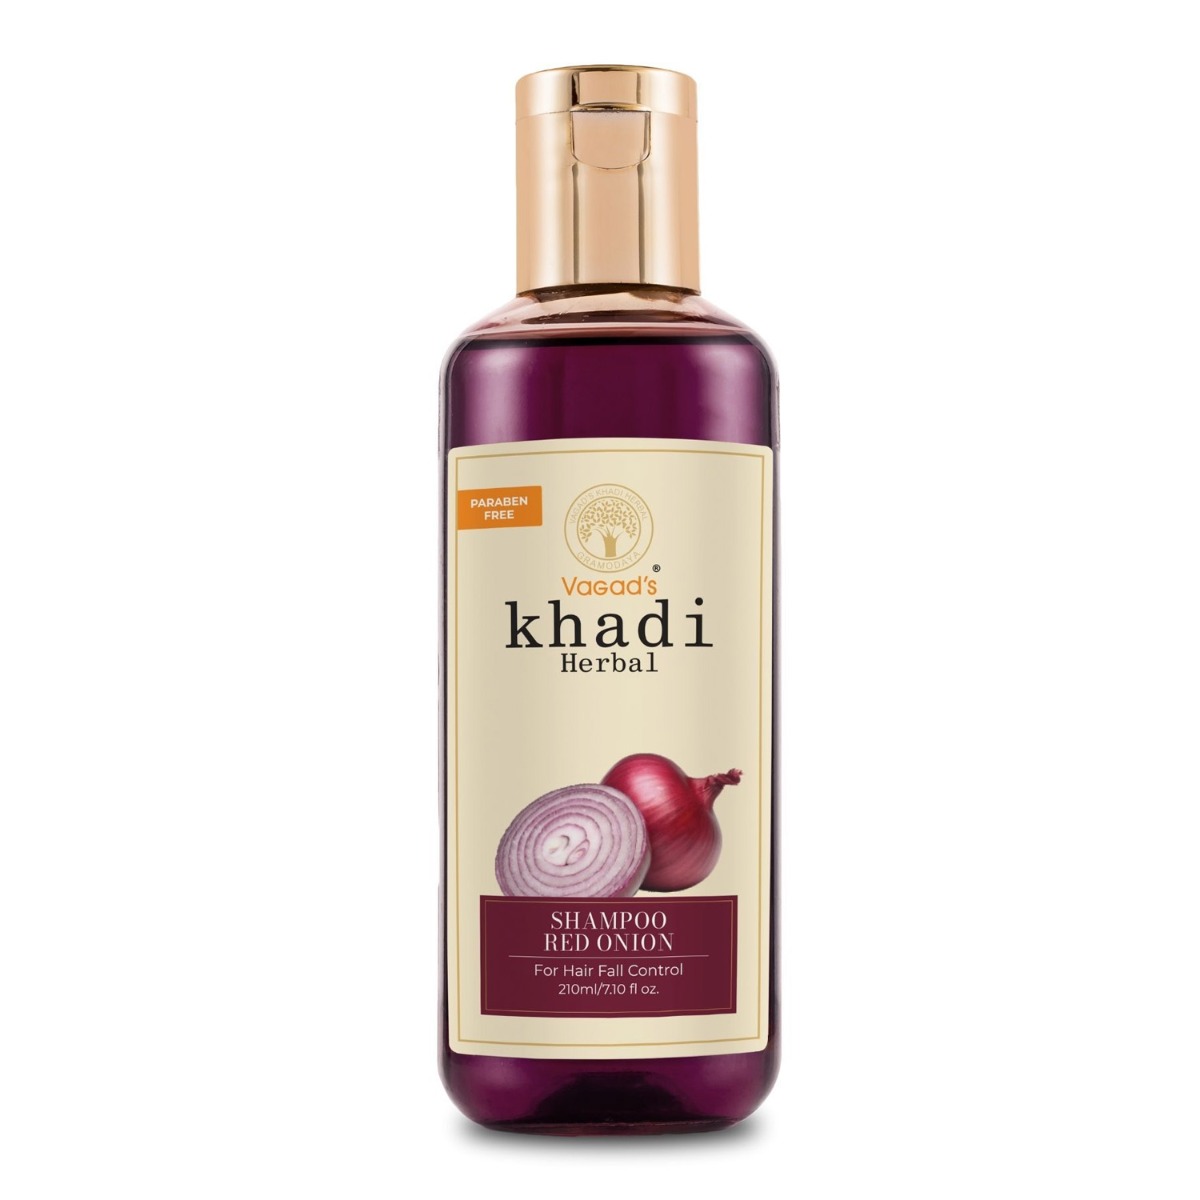 Vagad's Khadi Onion Shampoo, 210ml